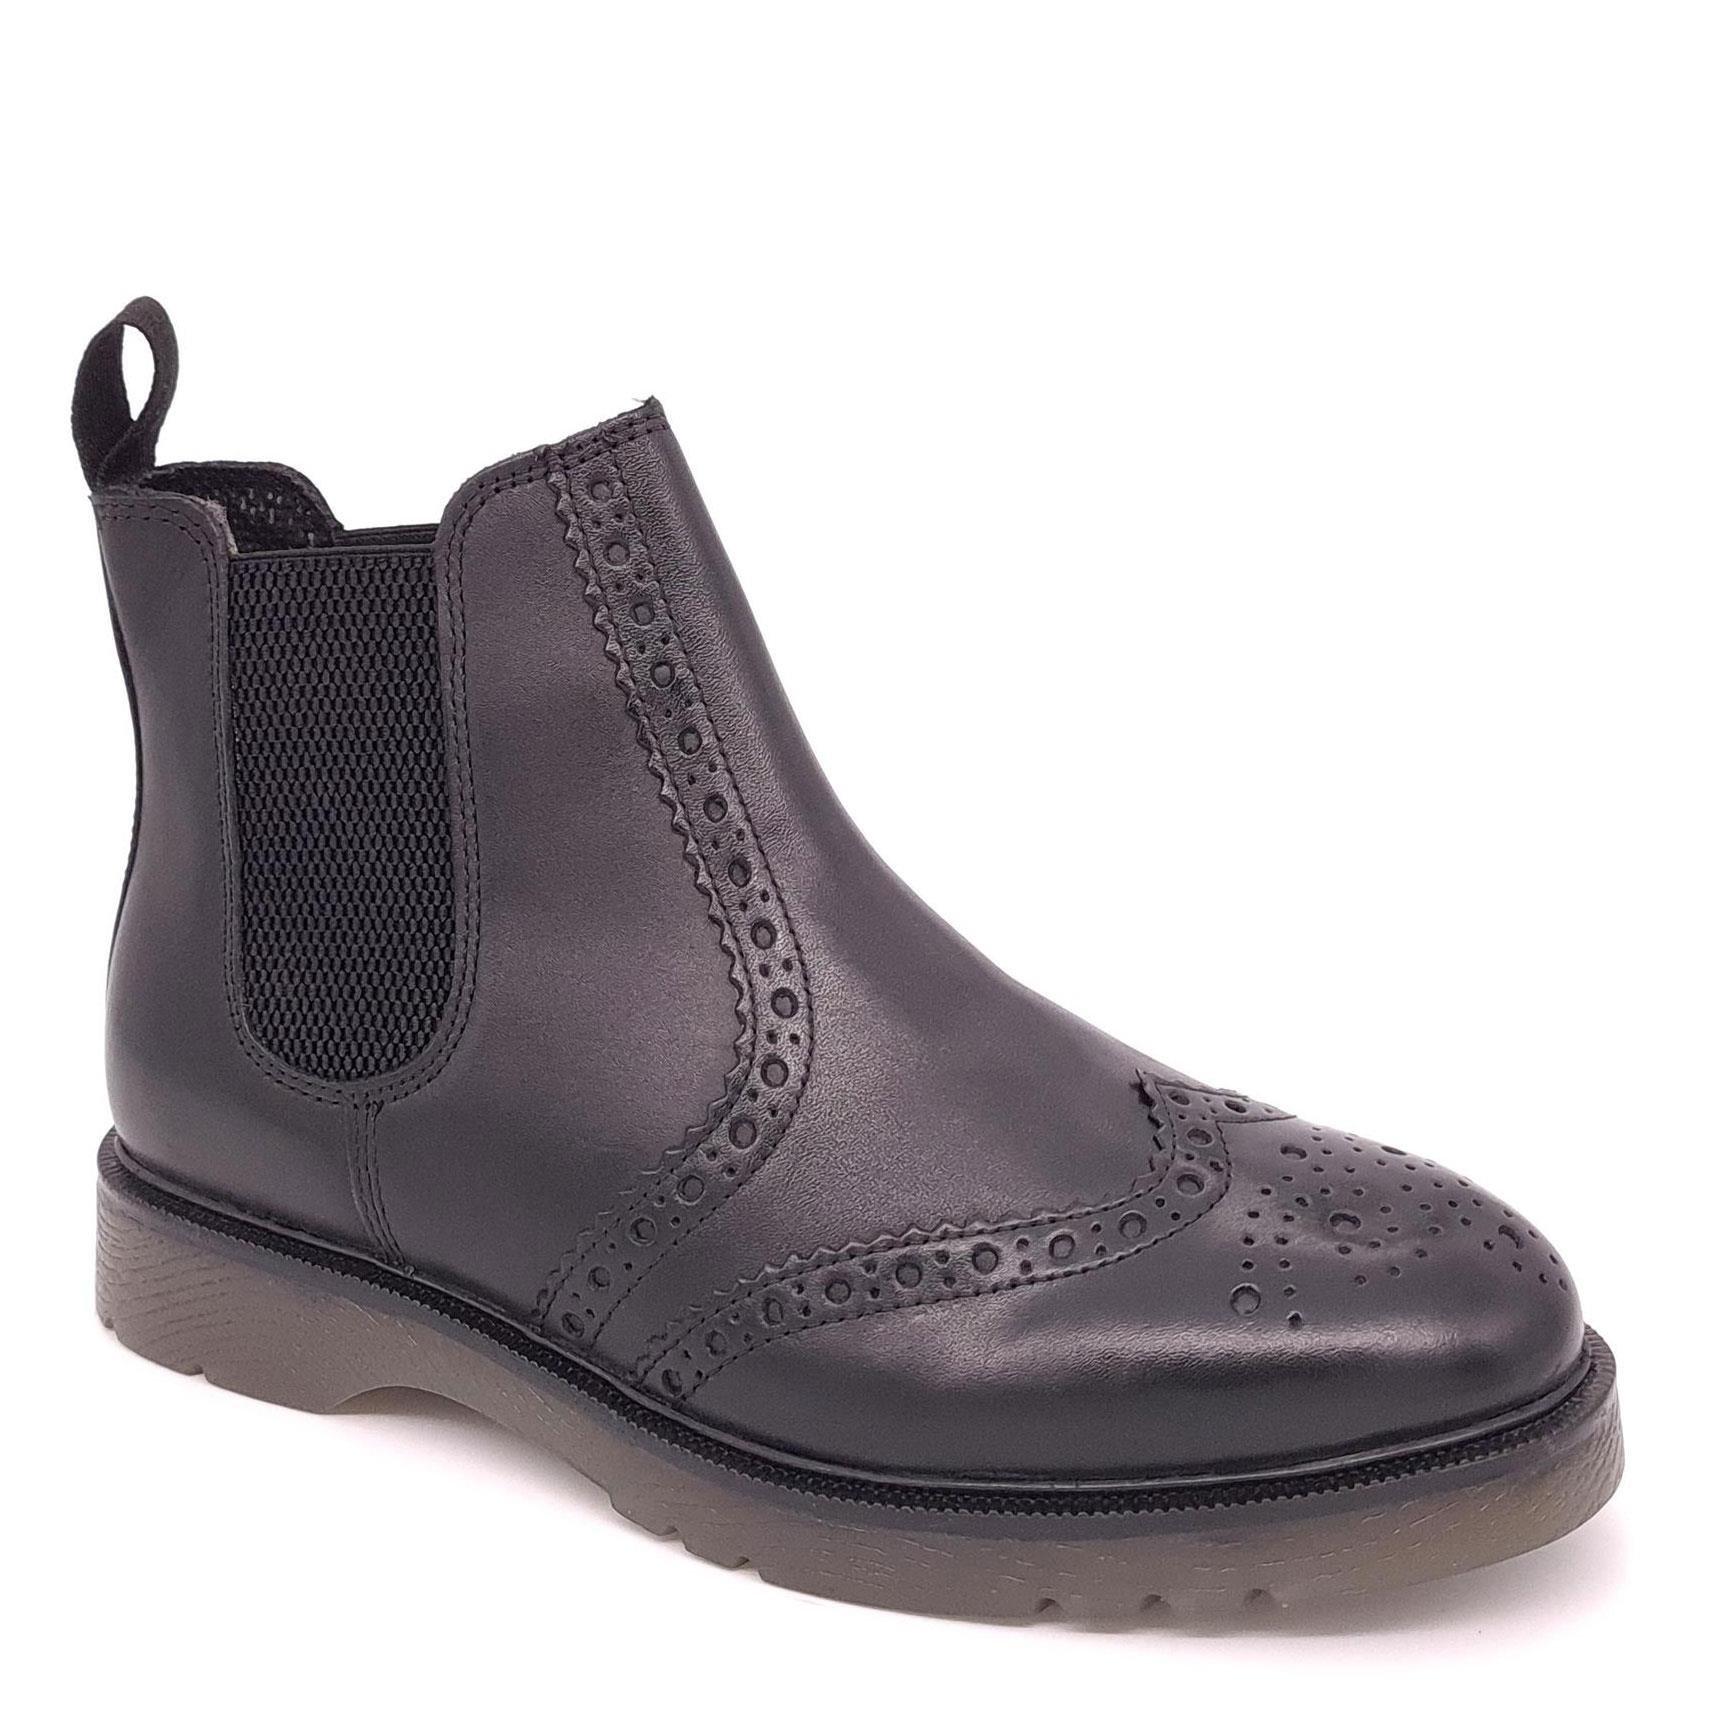 Кожаные ботинки челси с эффектом броги Warkton Frank James, черный цена и фото